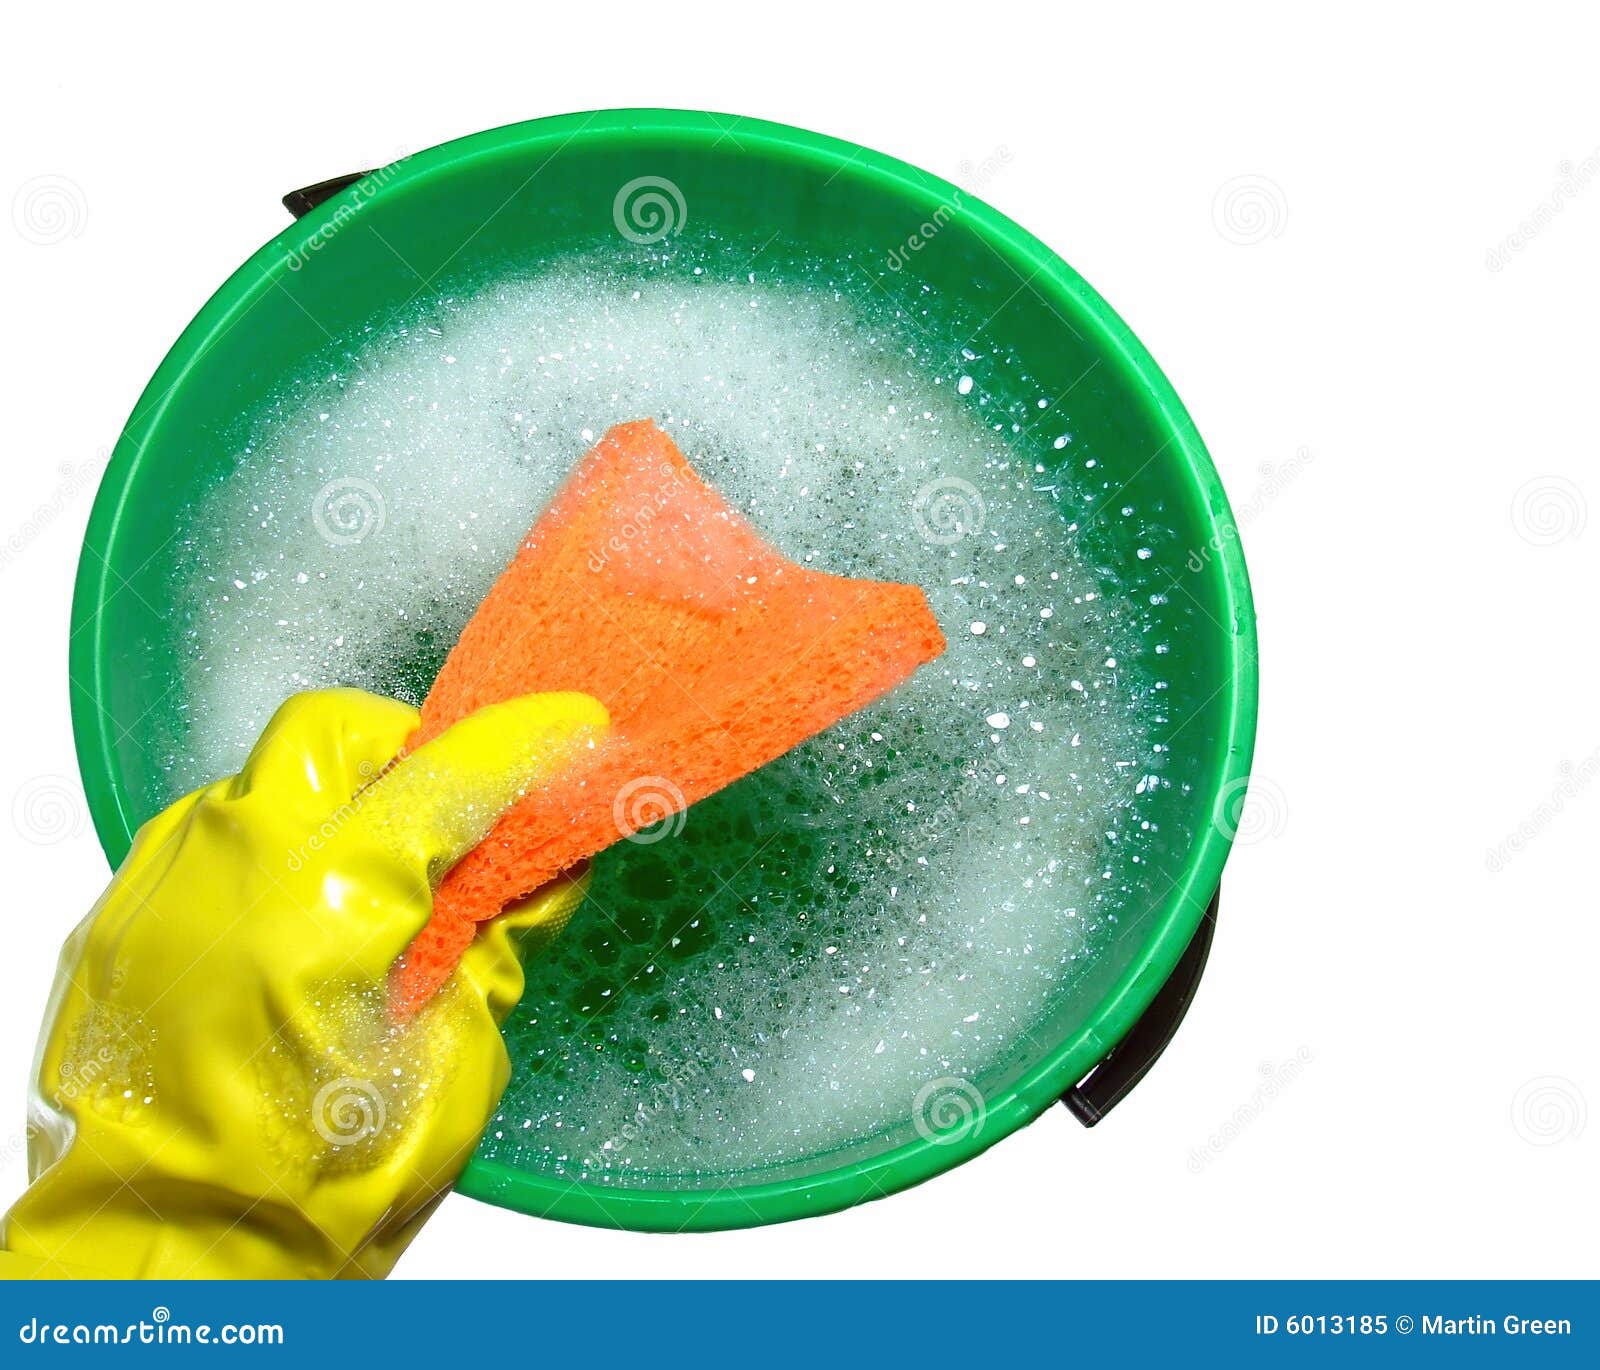 bucket-soapy-water-6013185.jpg